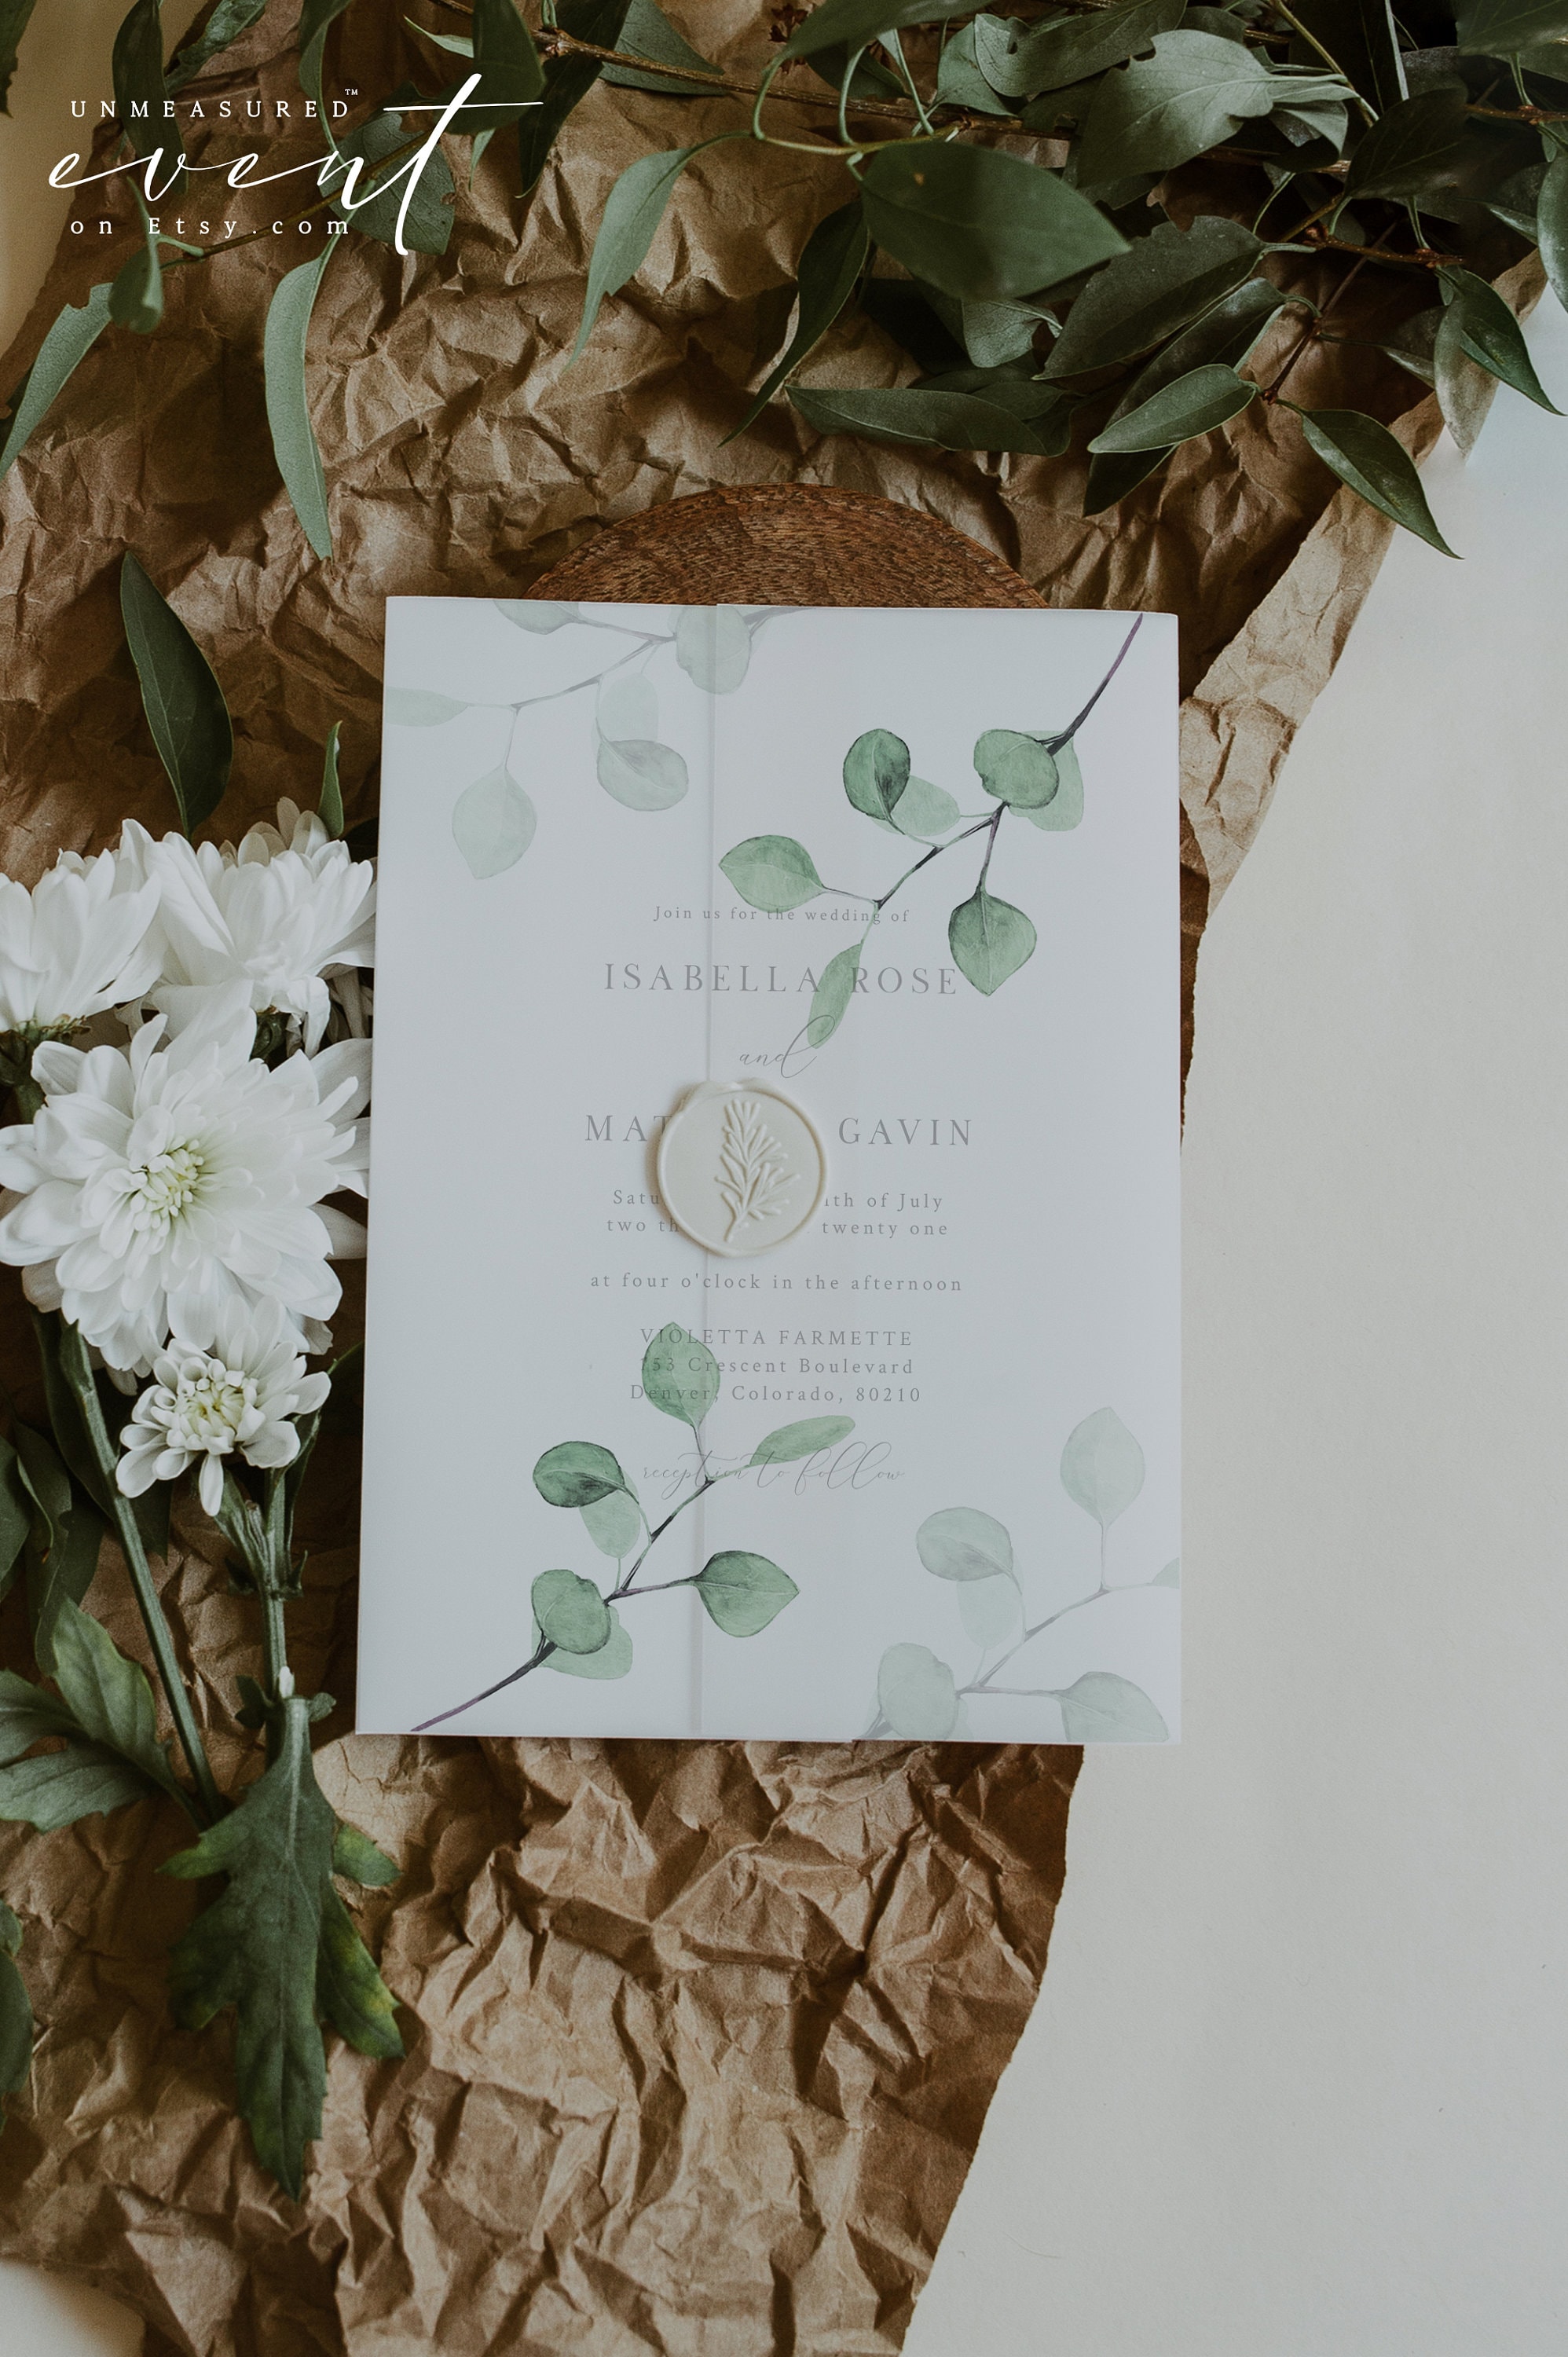 Eucalyptus Vellum Paper, Letter Size Vellum Paper, Printed Eucalyptus  Translucent Paper, DIY Wedding Invitations, DIY Invitations